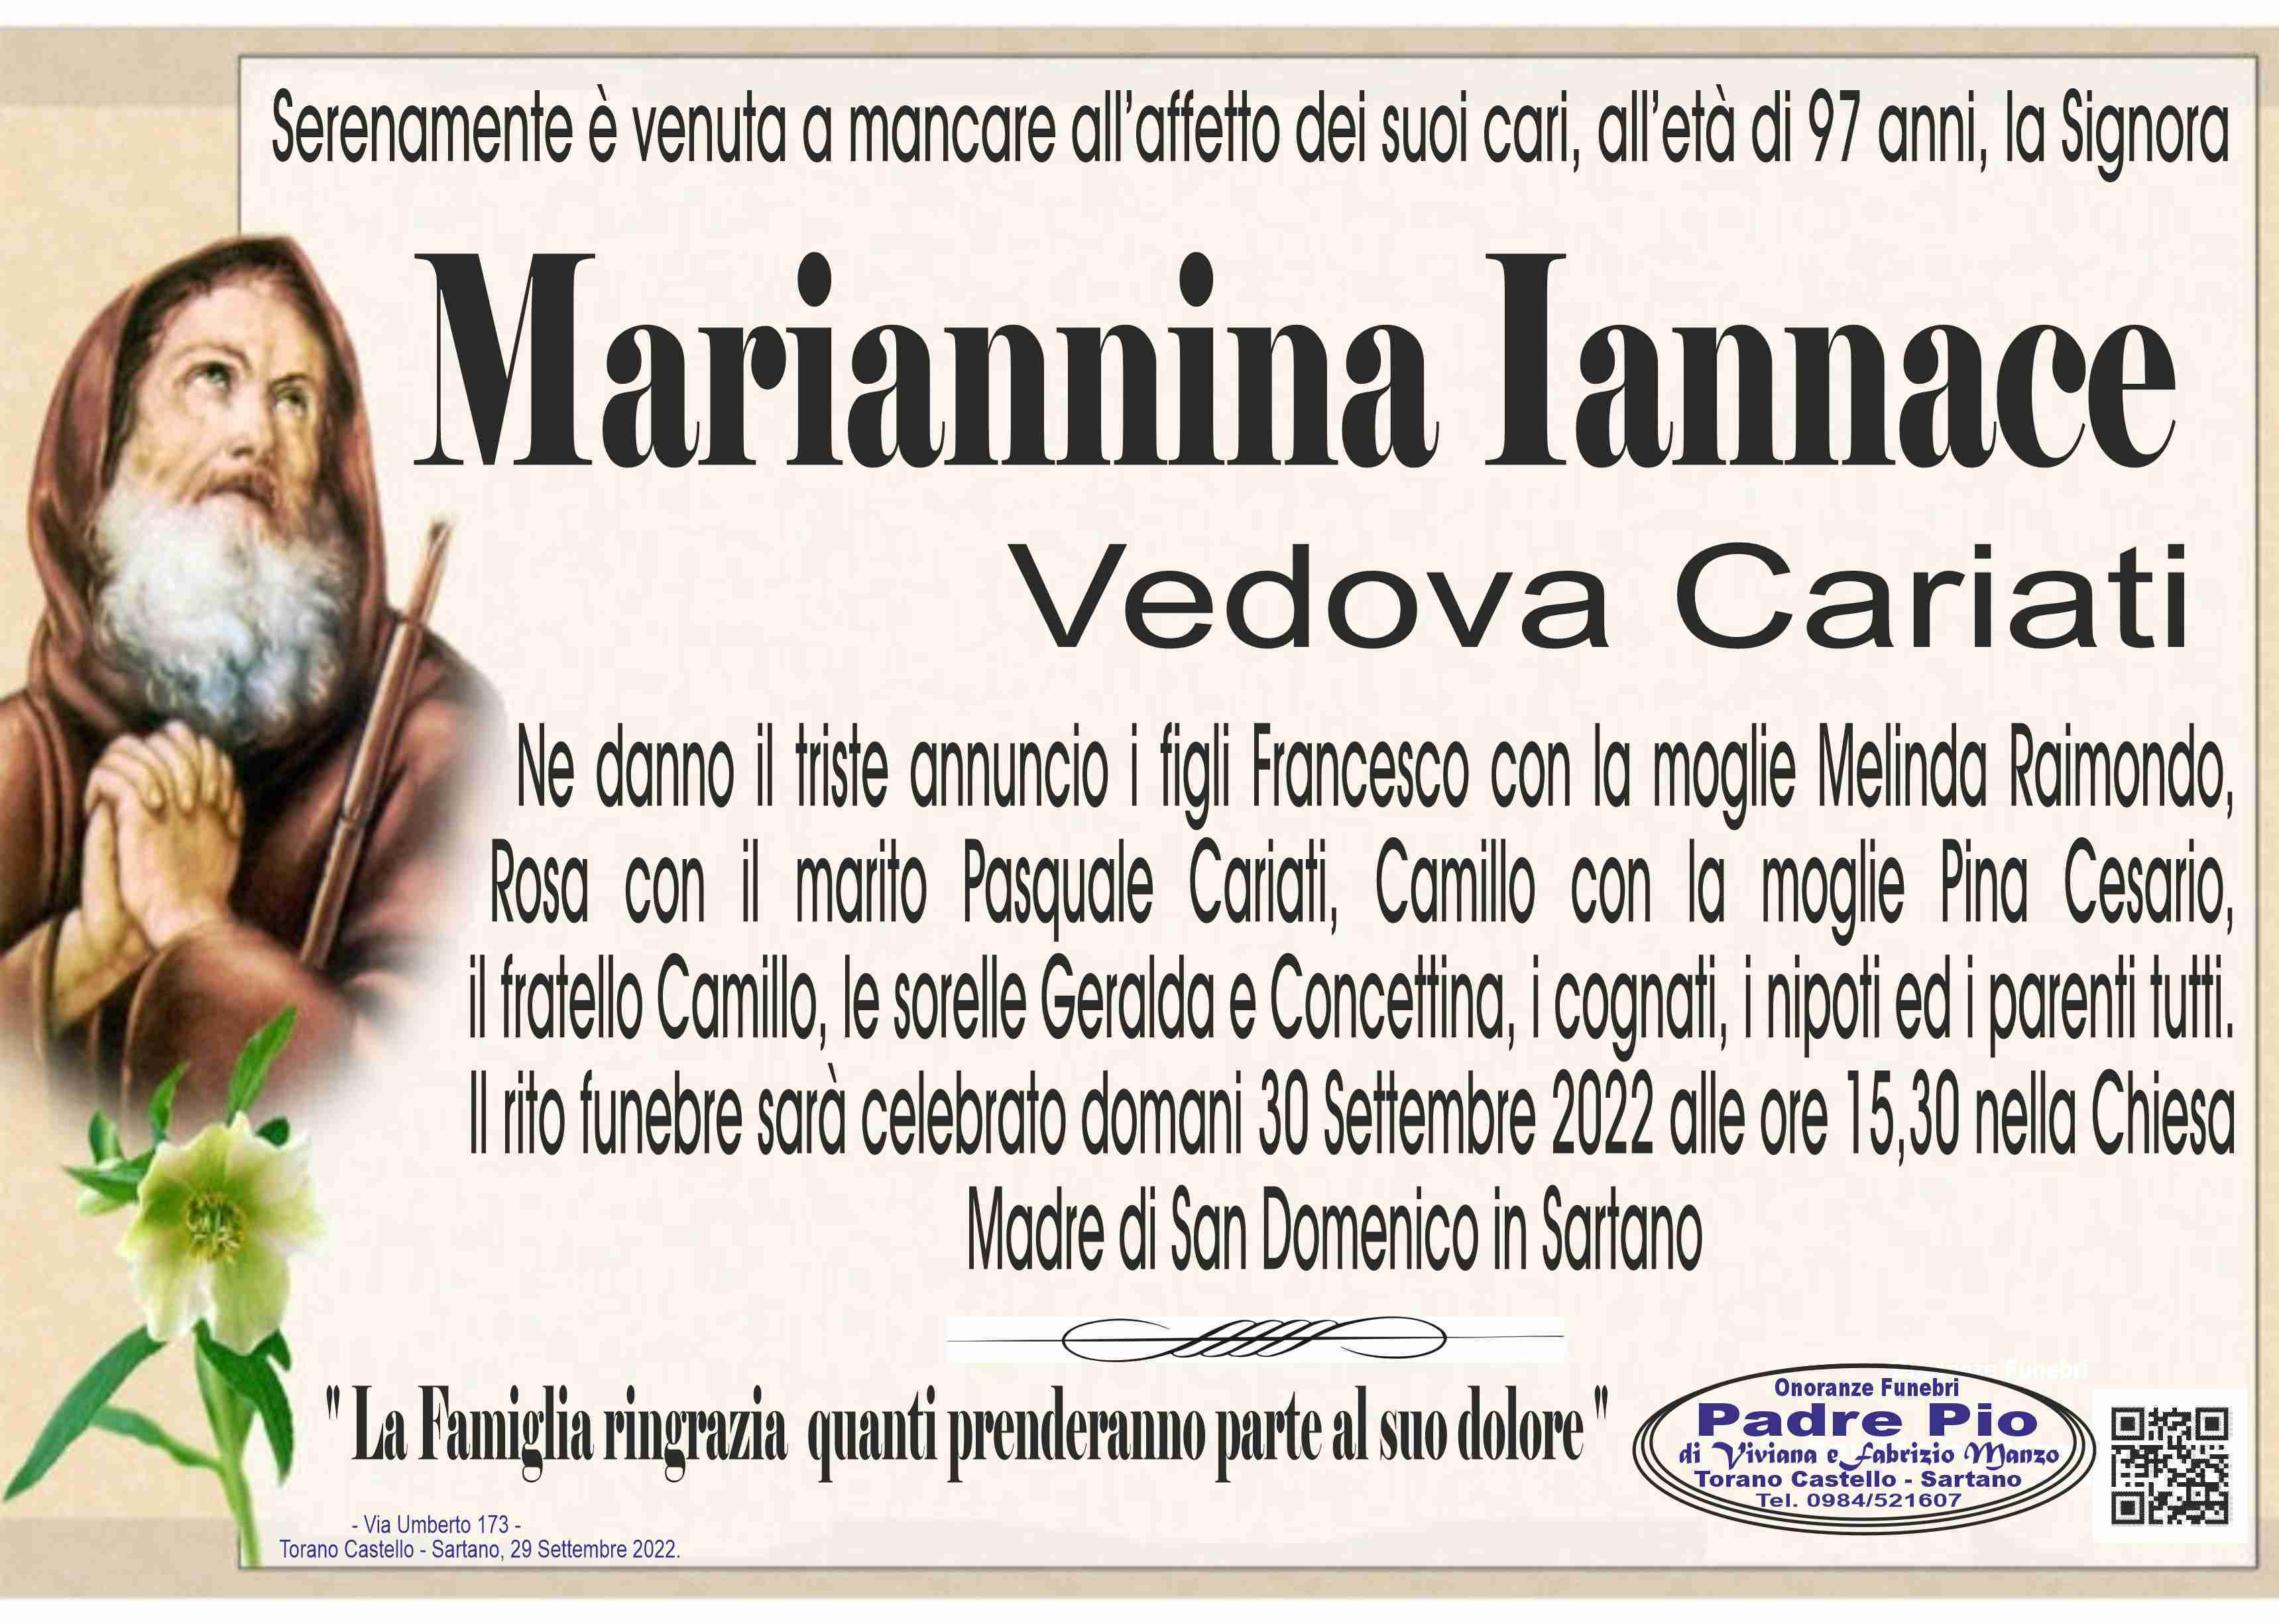 Mariannina Iannace